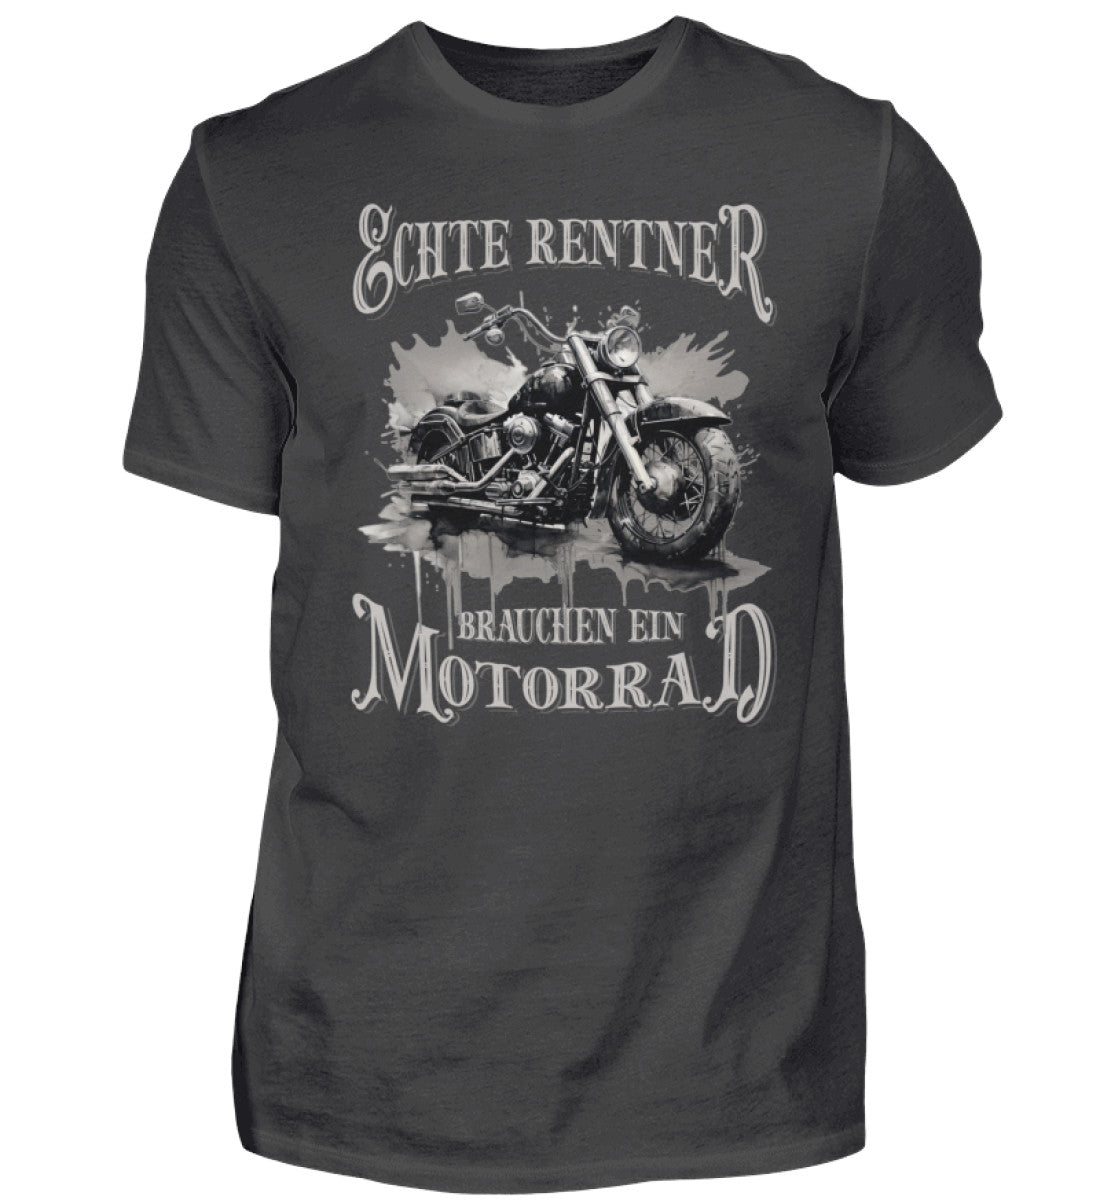 Ein Biker T-Shirt für Motorradfahrer von Wingbikers mit dem Aufdruck, Echte Rentner brauchen ein Motorrad, in dunkelgrau.